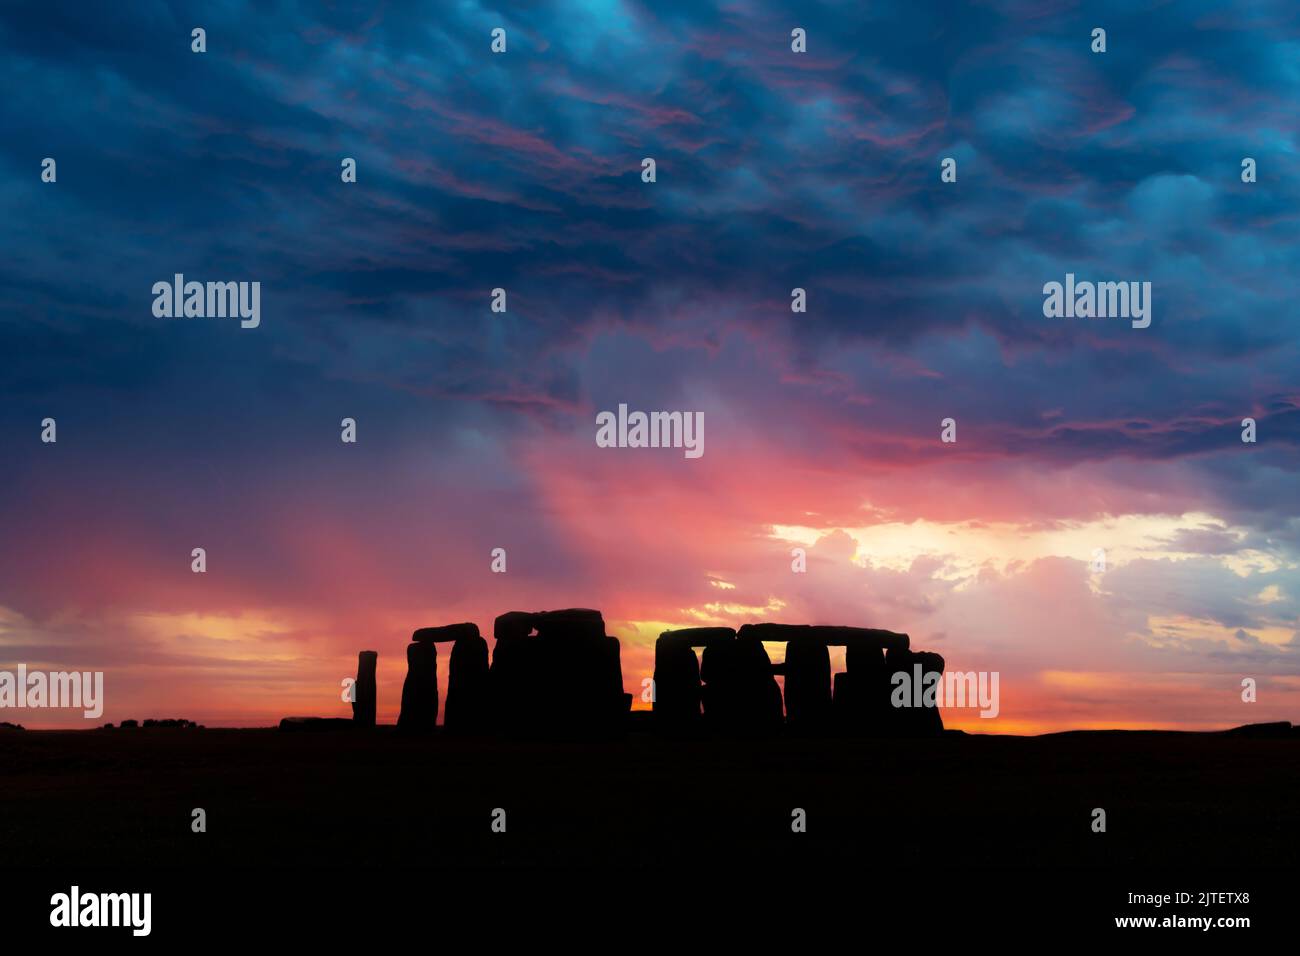 Il famoso monumento preistorico di Stonehenge con un cielo spettacolare al tramonto, Regno Unito Foto Stock